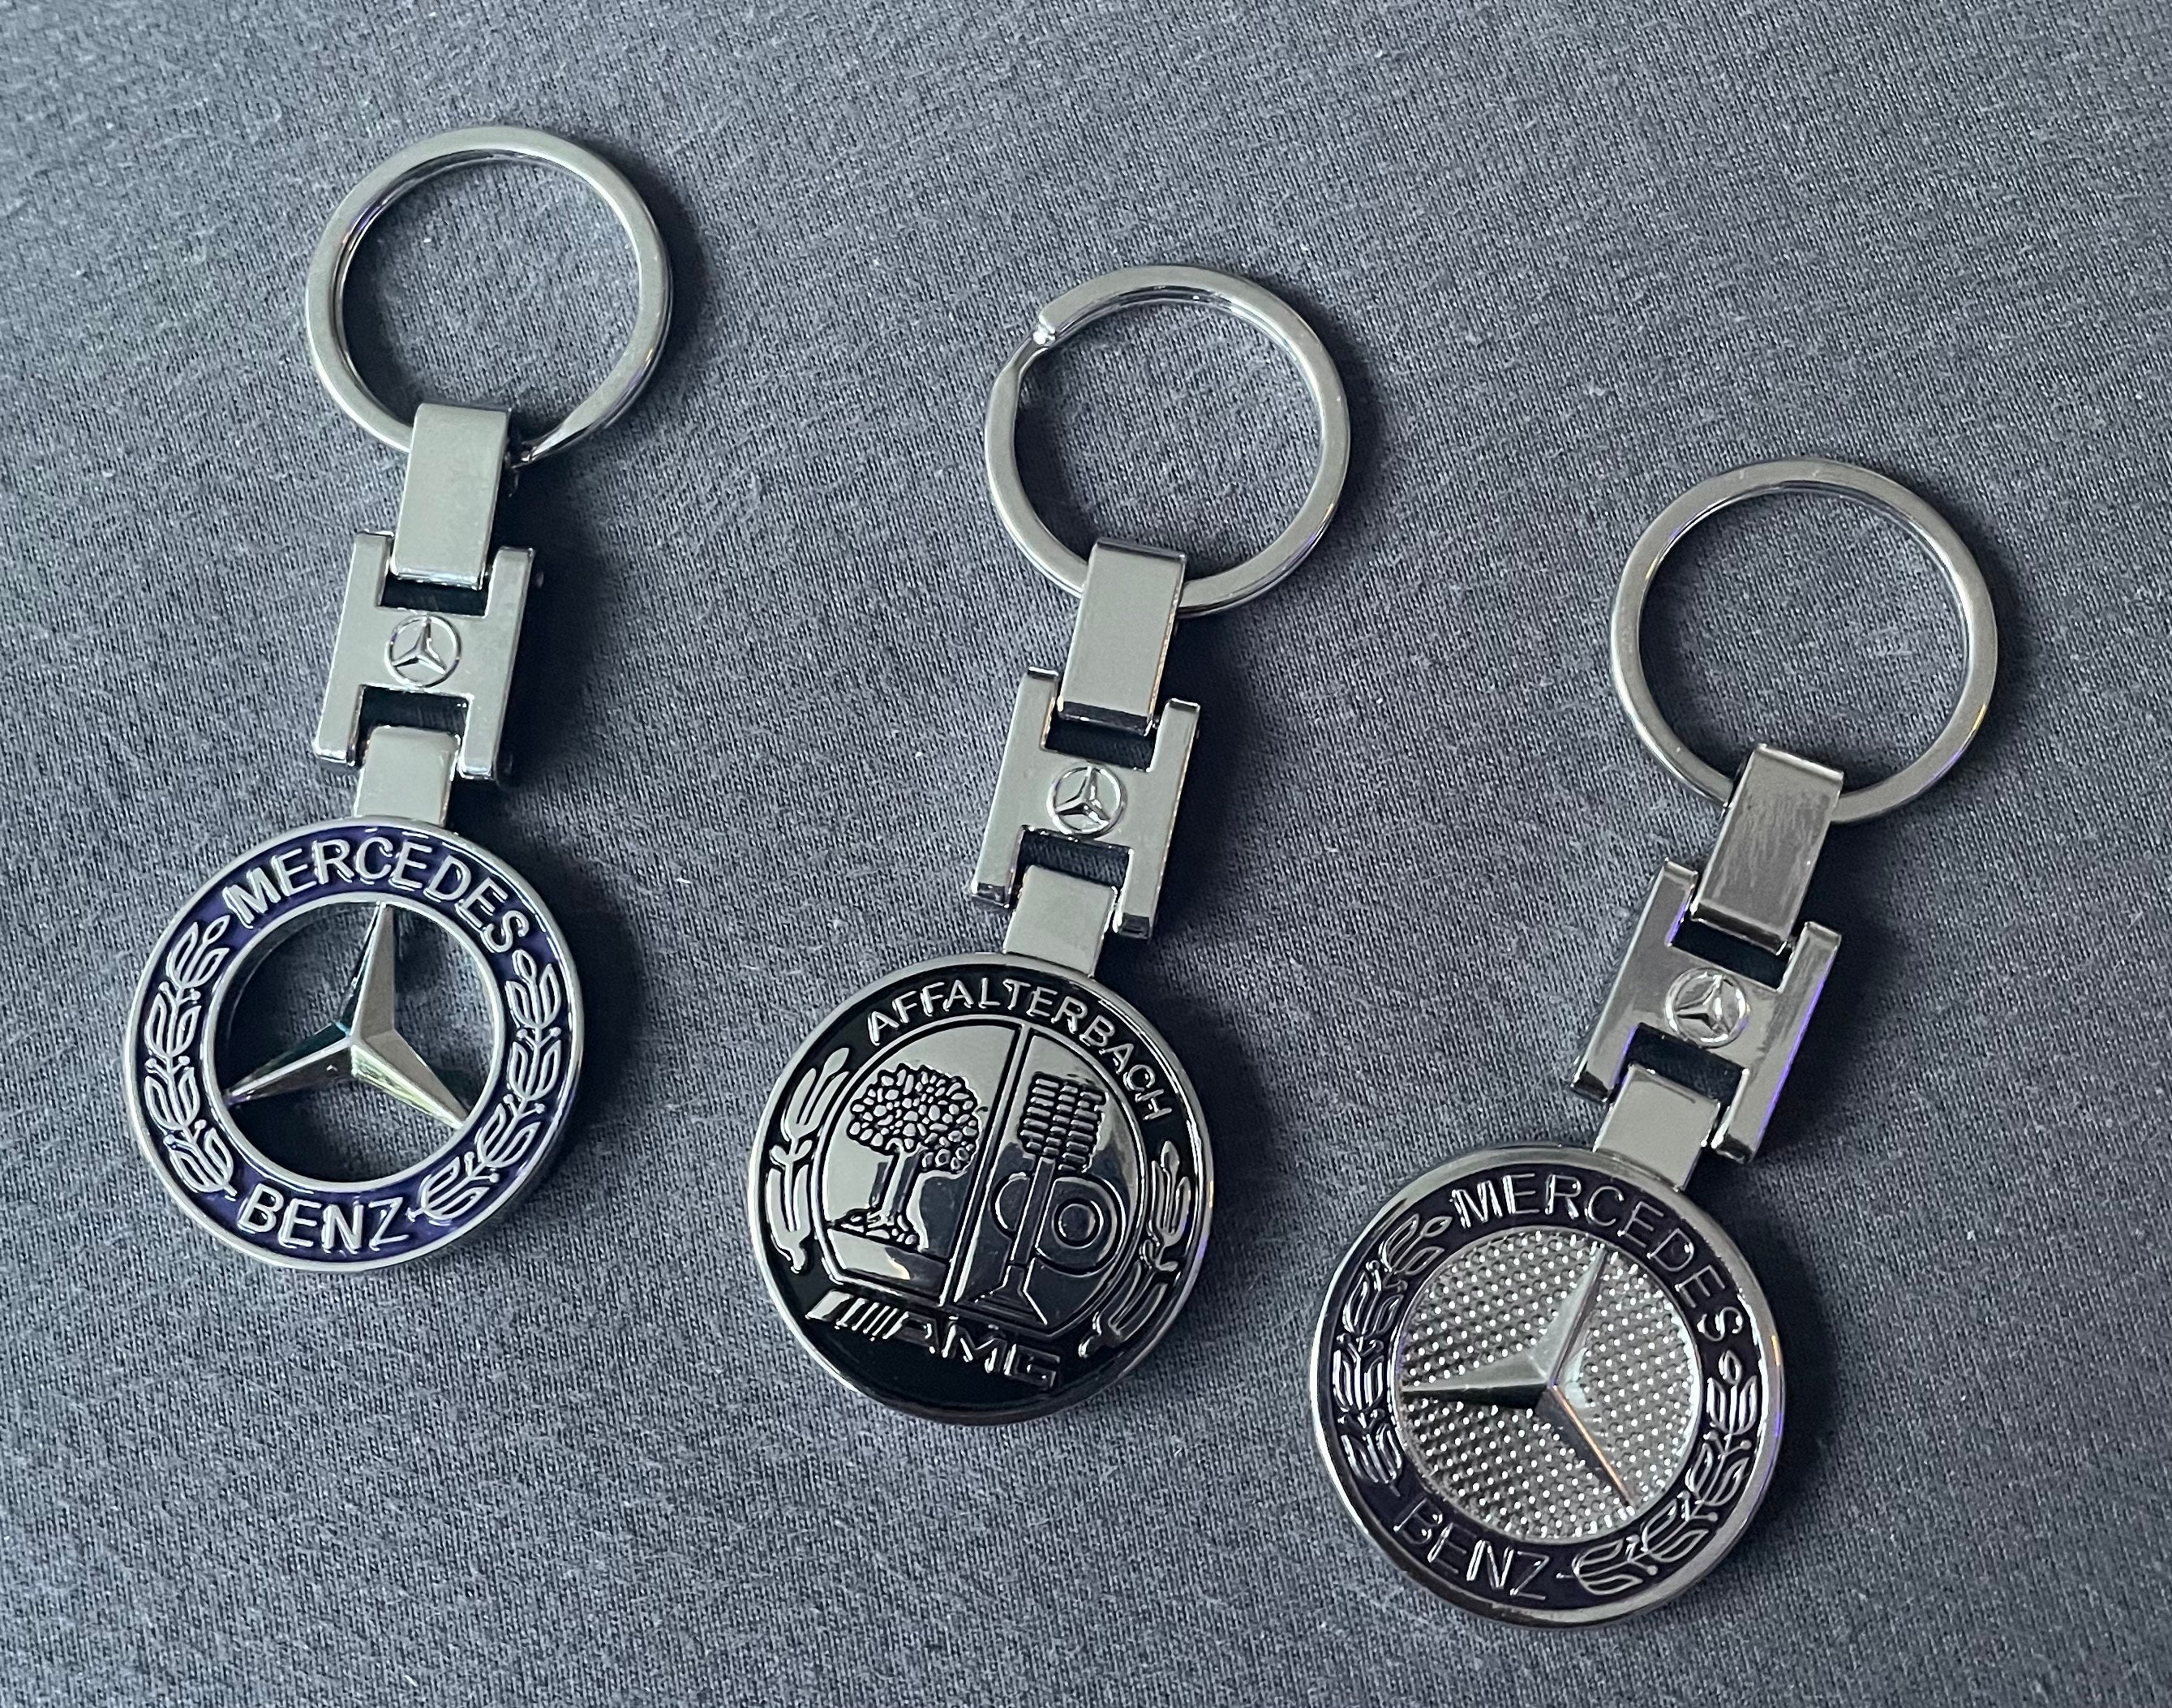 Mercedes Benz amg Metall Alcantara Schlüsselanhänger Luxus Schlüsselanhänger  hochwertige Schlüsselanhänger